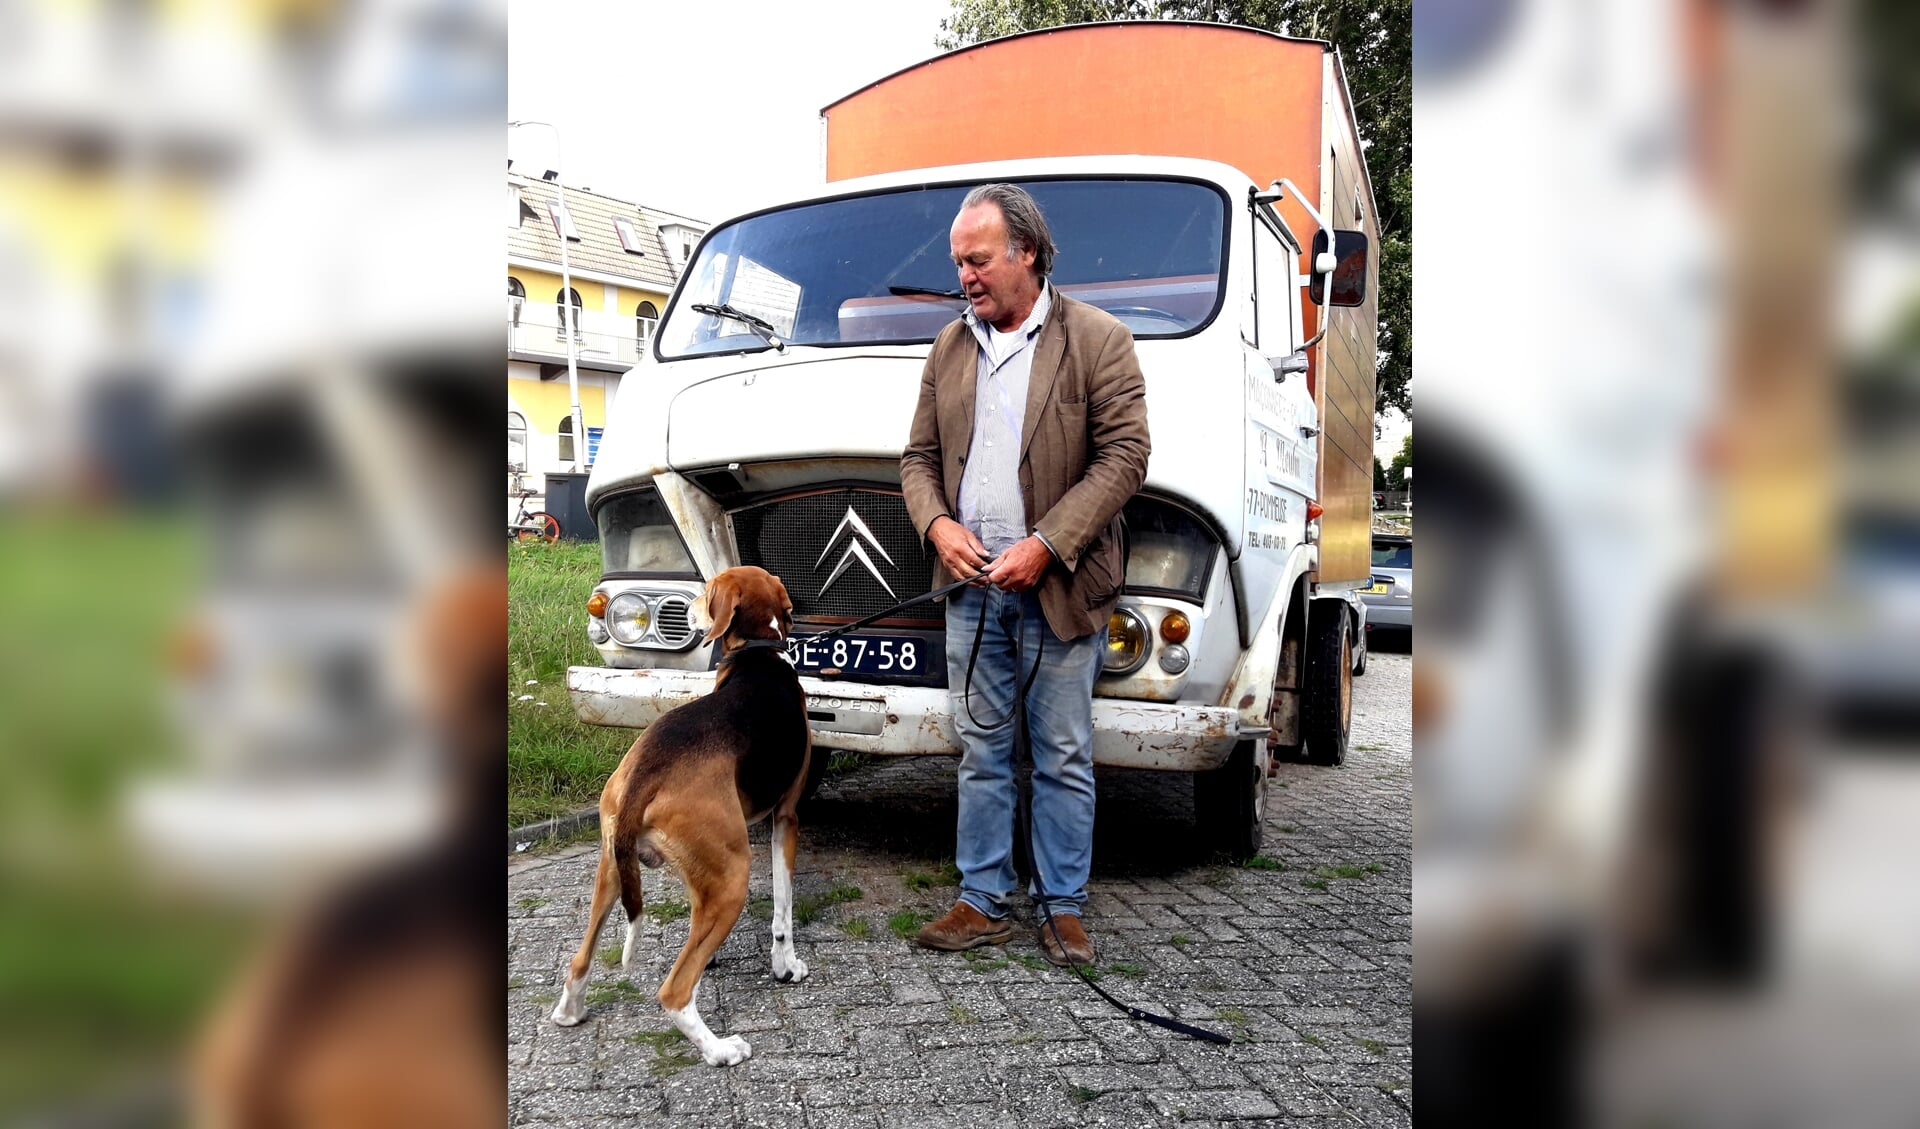 Tijn met zijn hond: de reden dat hij de Citroën van de hand wil doen